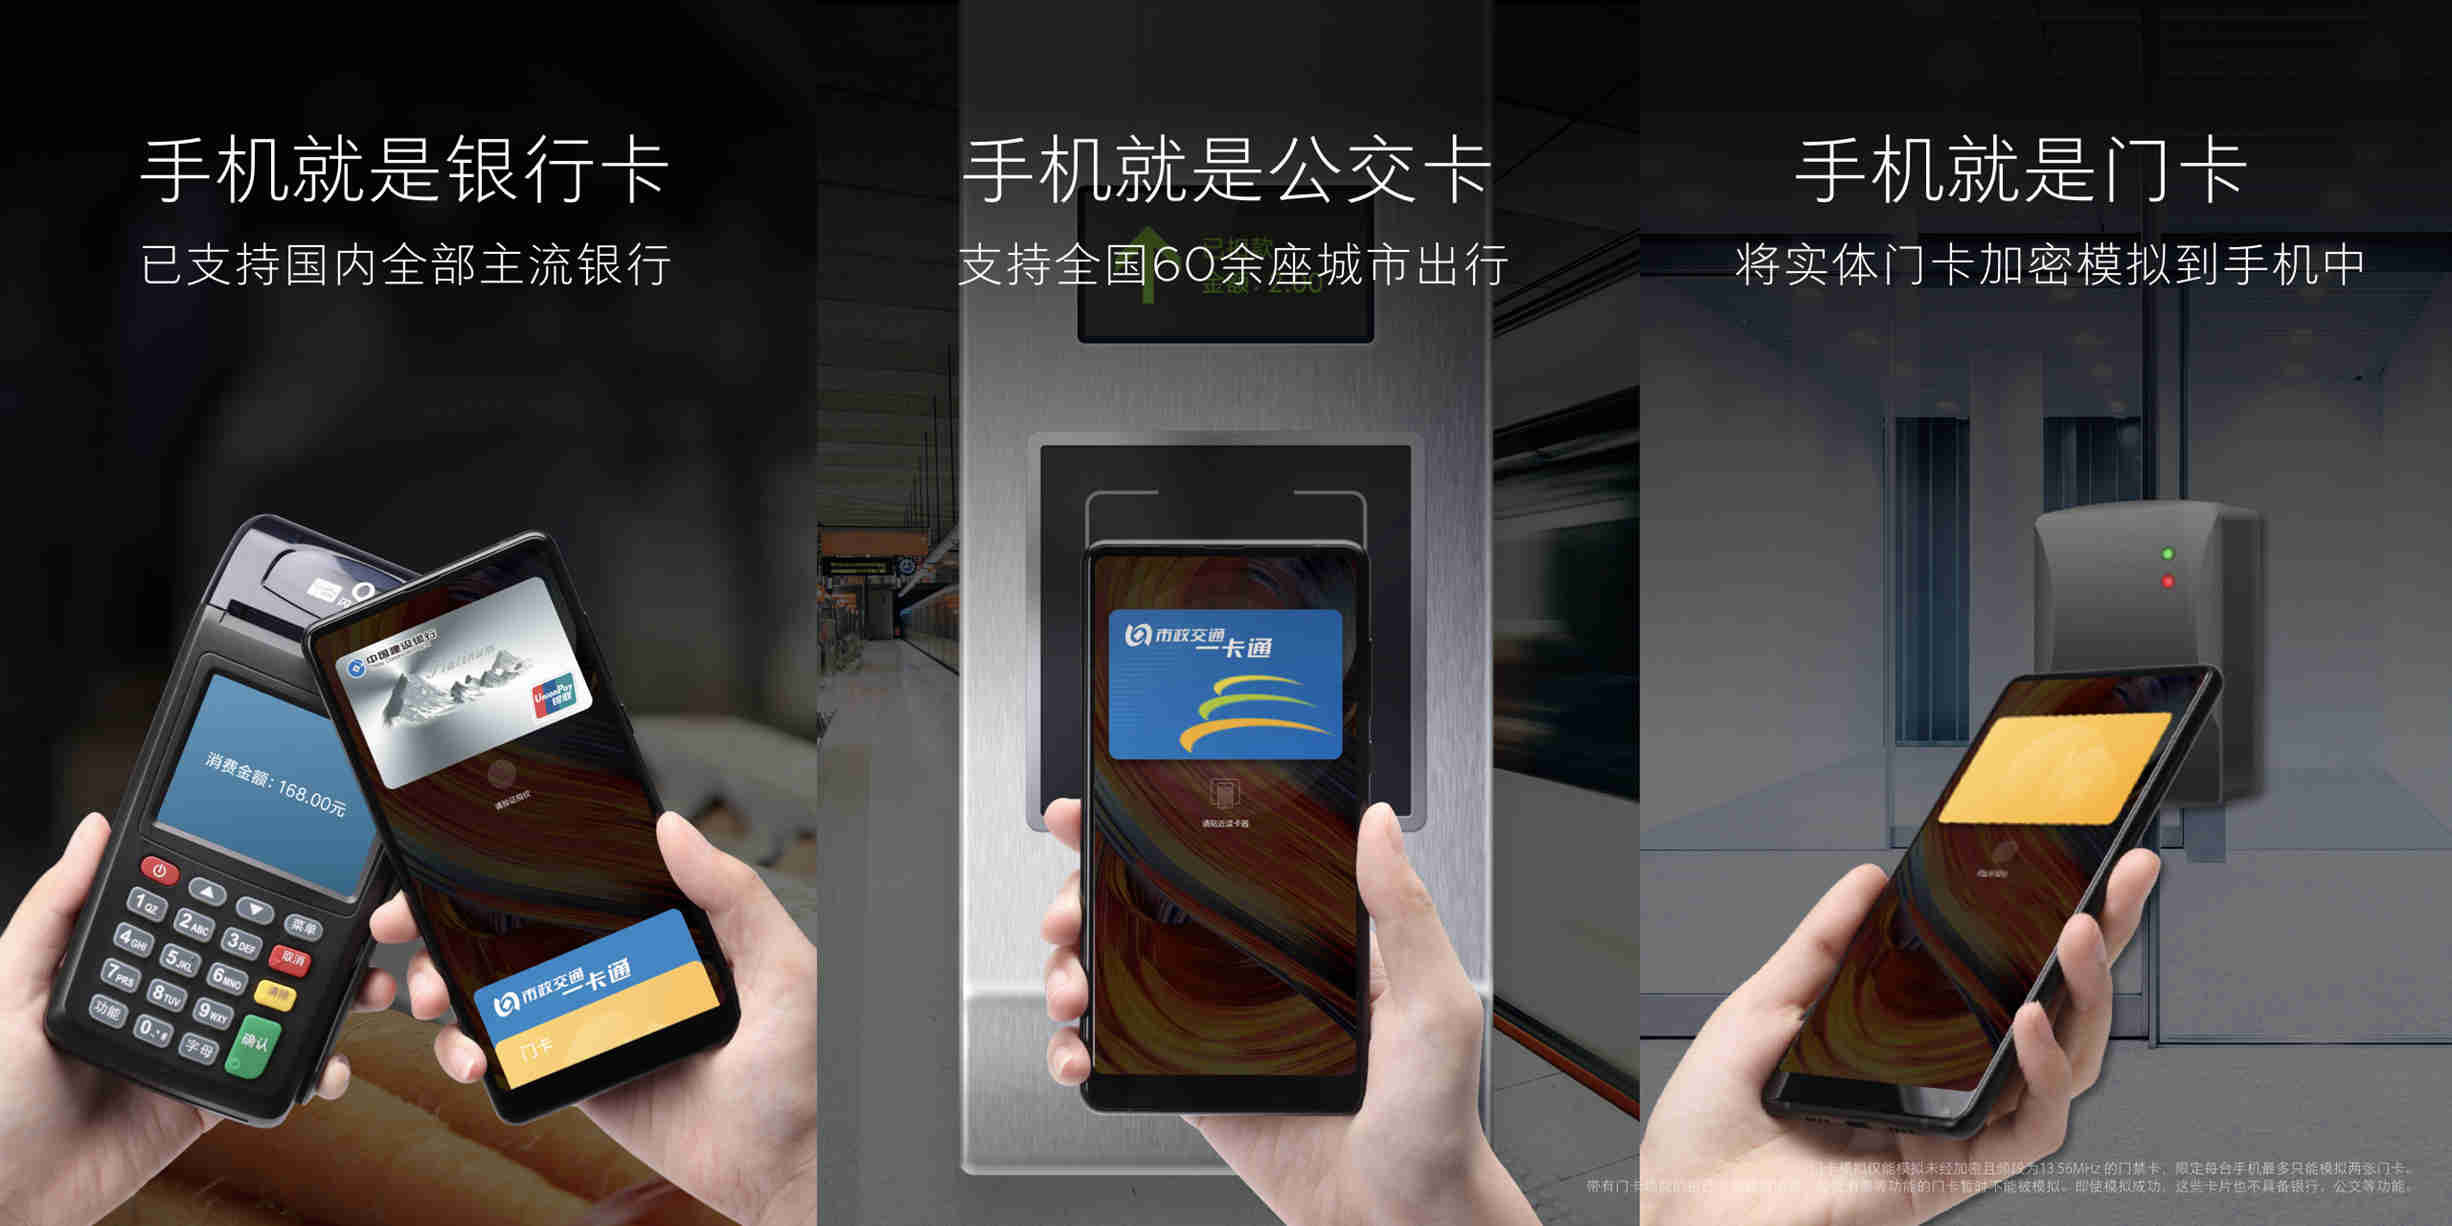 Анонс Xiaomi Mi Mix 2S: флагман с двойной камерой, беспроводной зарядкой и AI